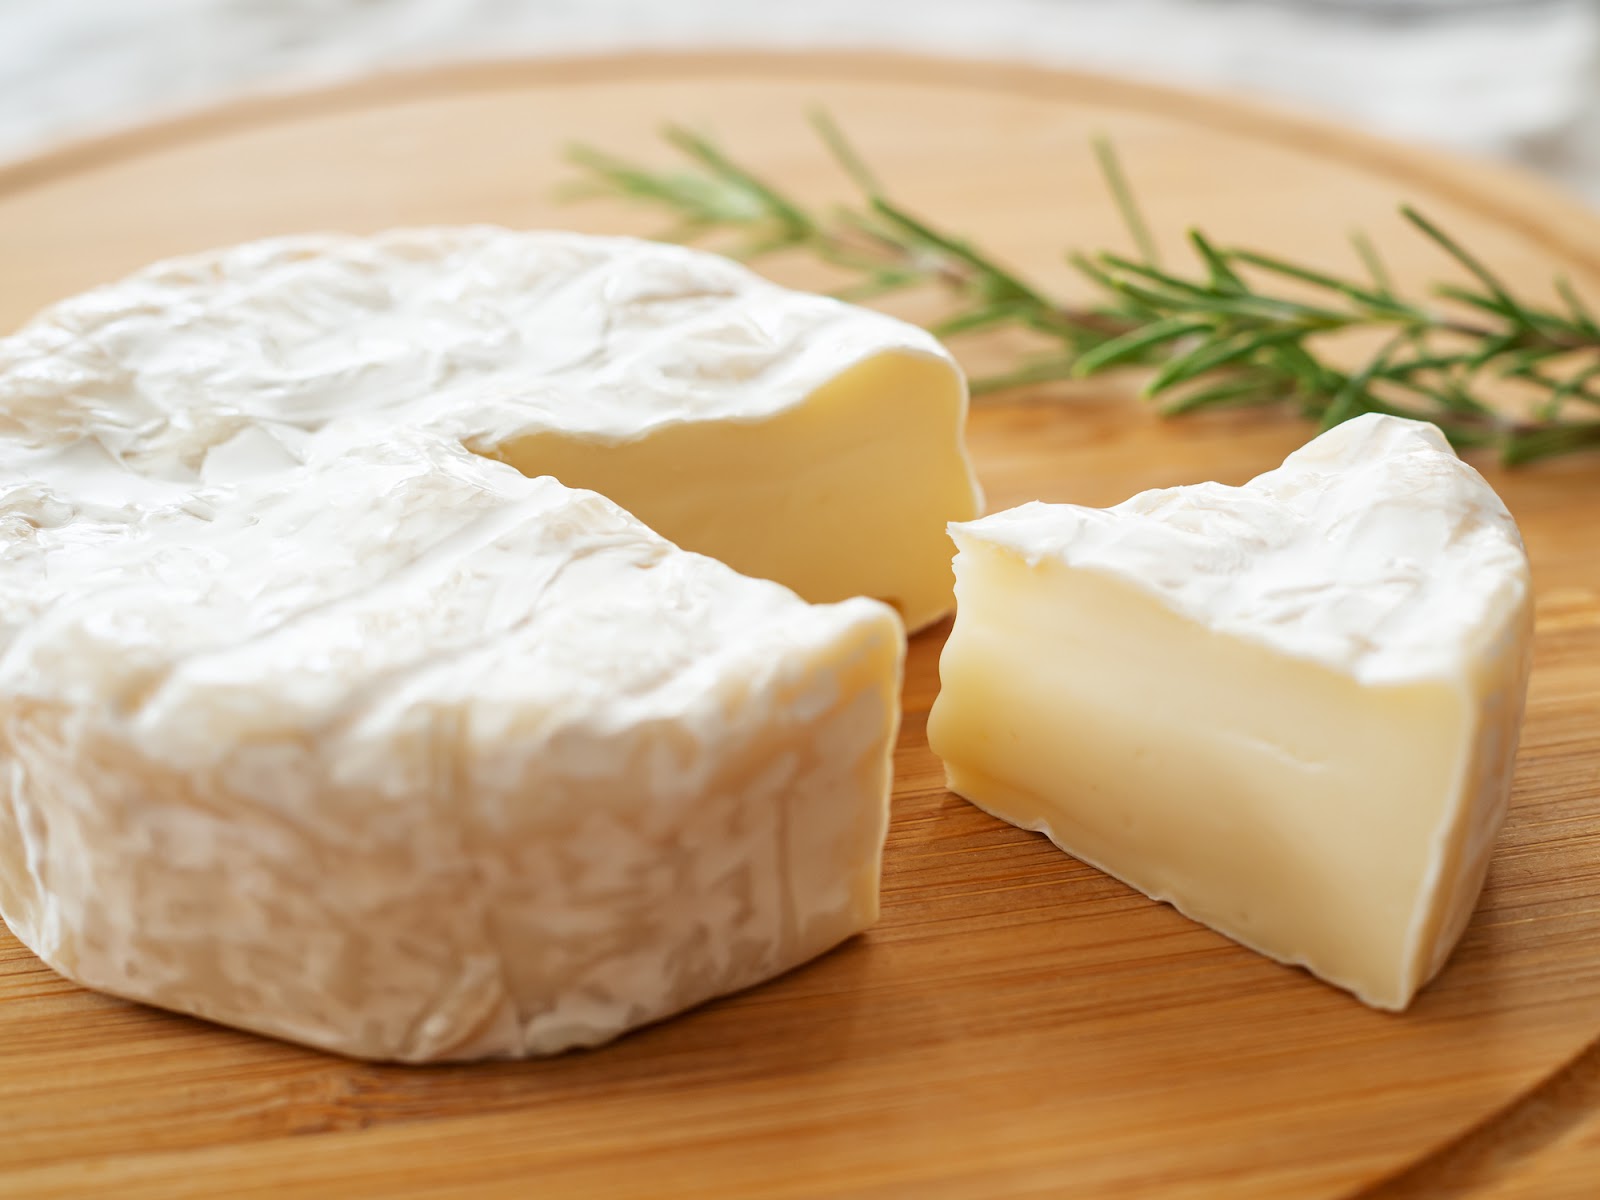 ソフトチーズとは、加圧も圧搾もされていない柔らかいチーズのこと。